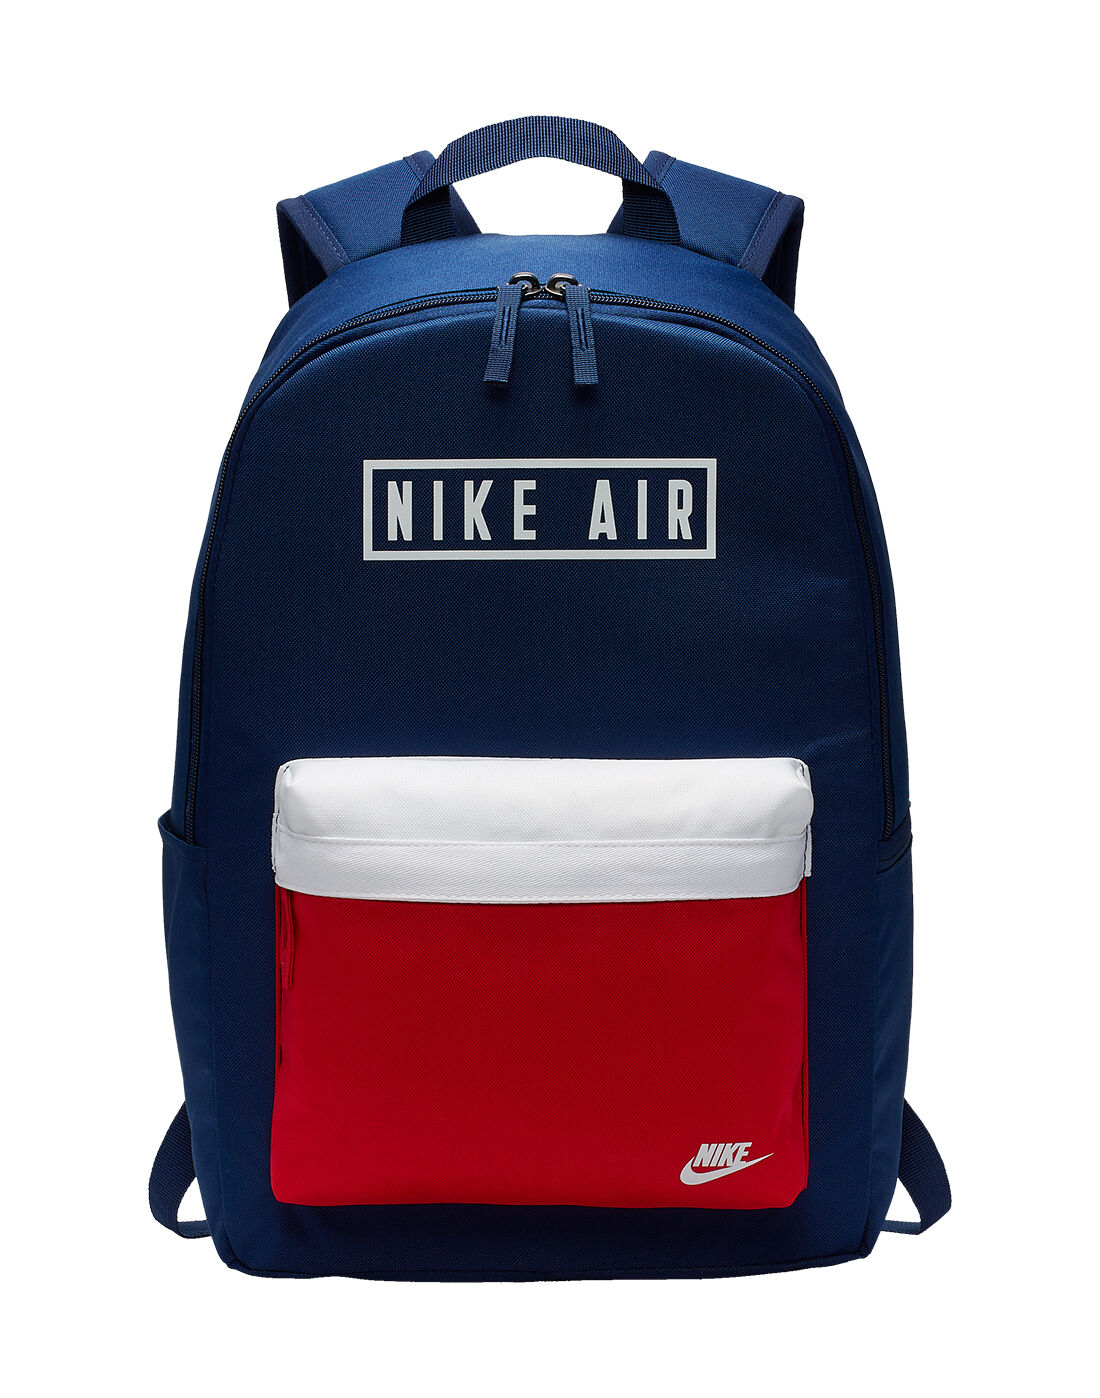 nike latest backpack